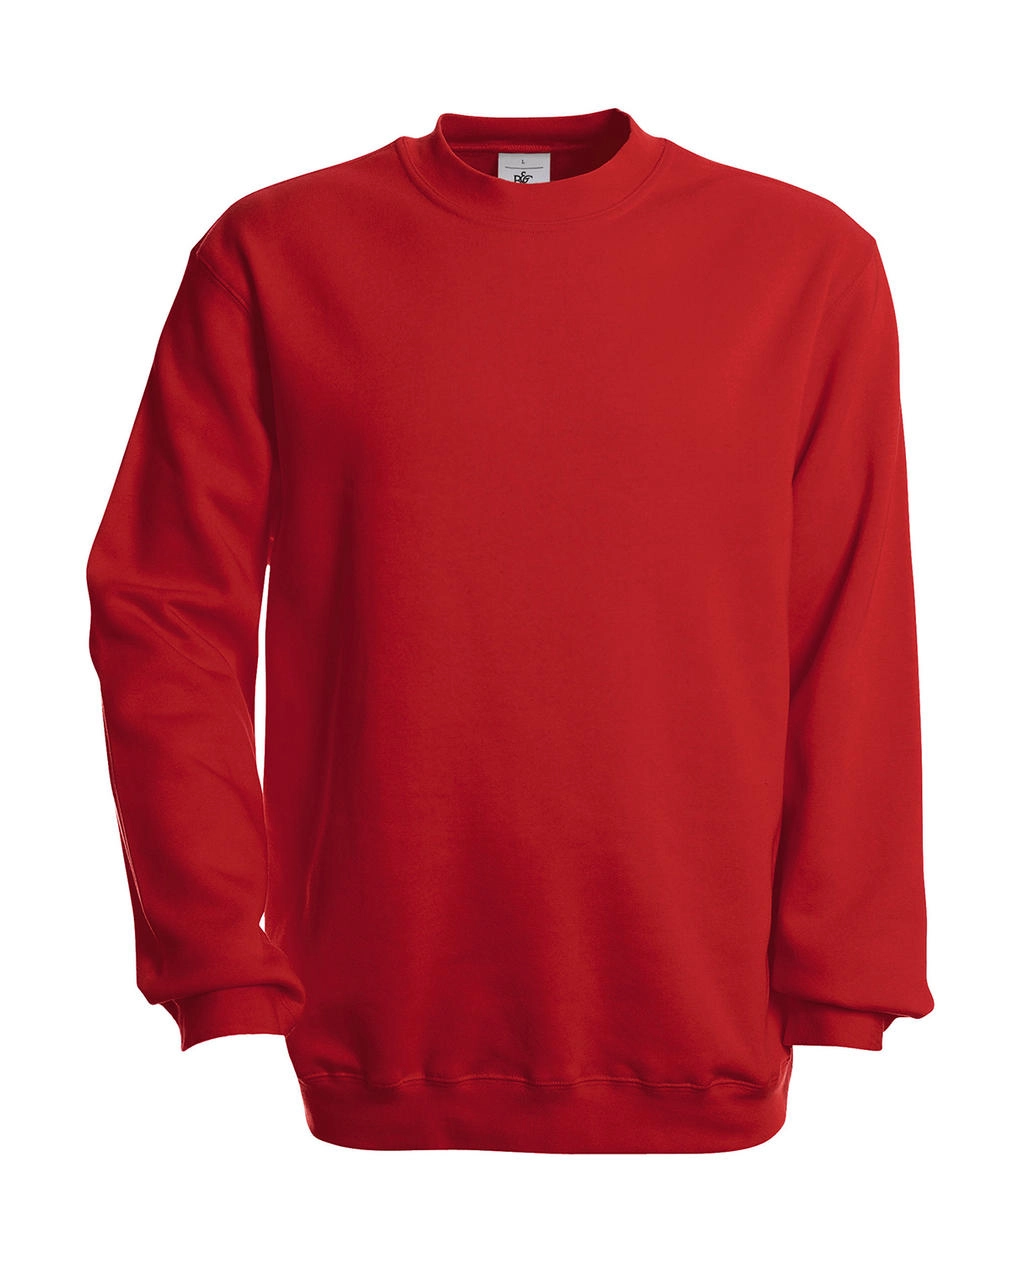 Set In Sweatshirt zum Besticken und Bedrucken in der Farbe Red mit Ihren Logo, Schriftzug oder Motiv.